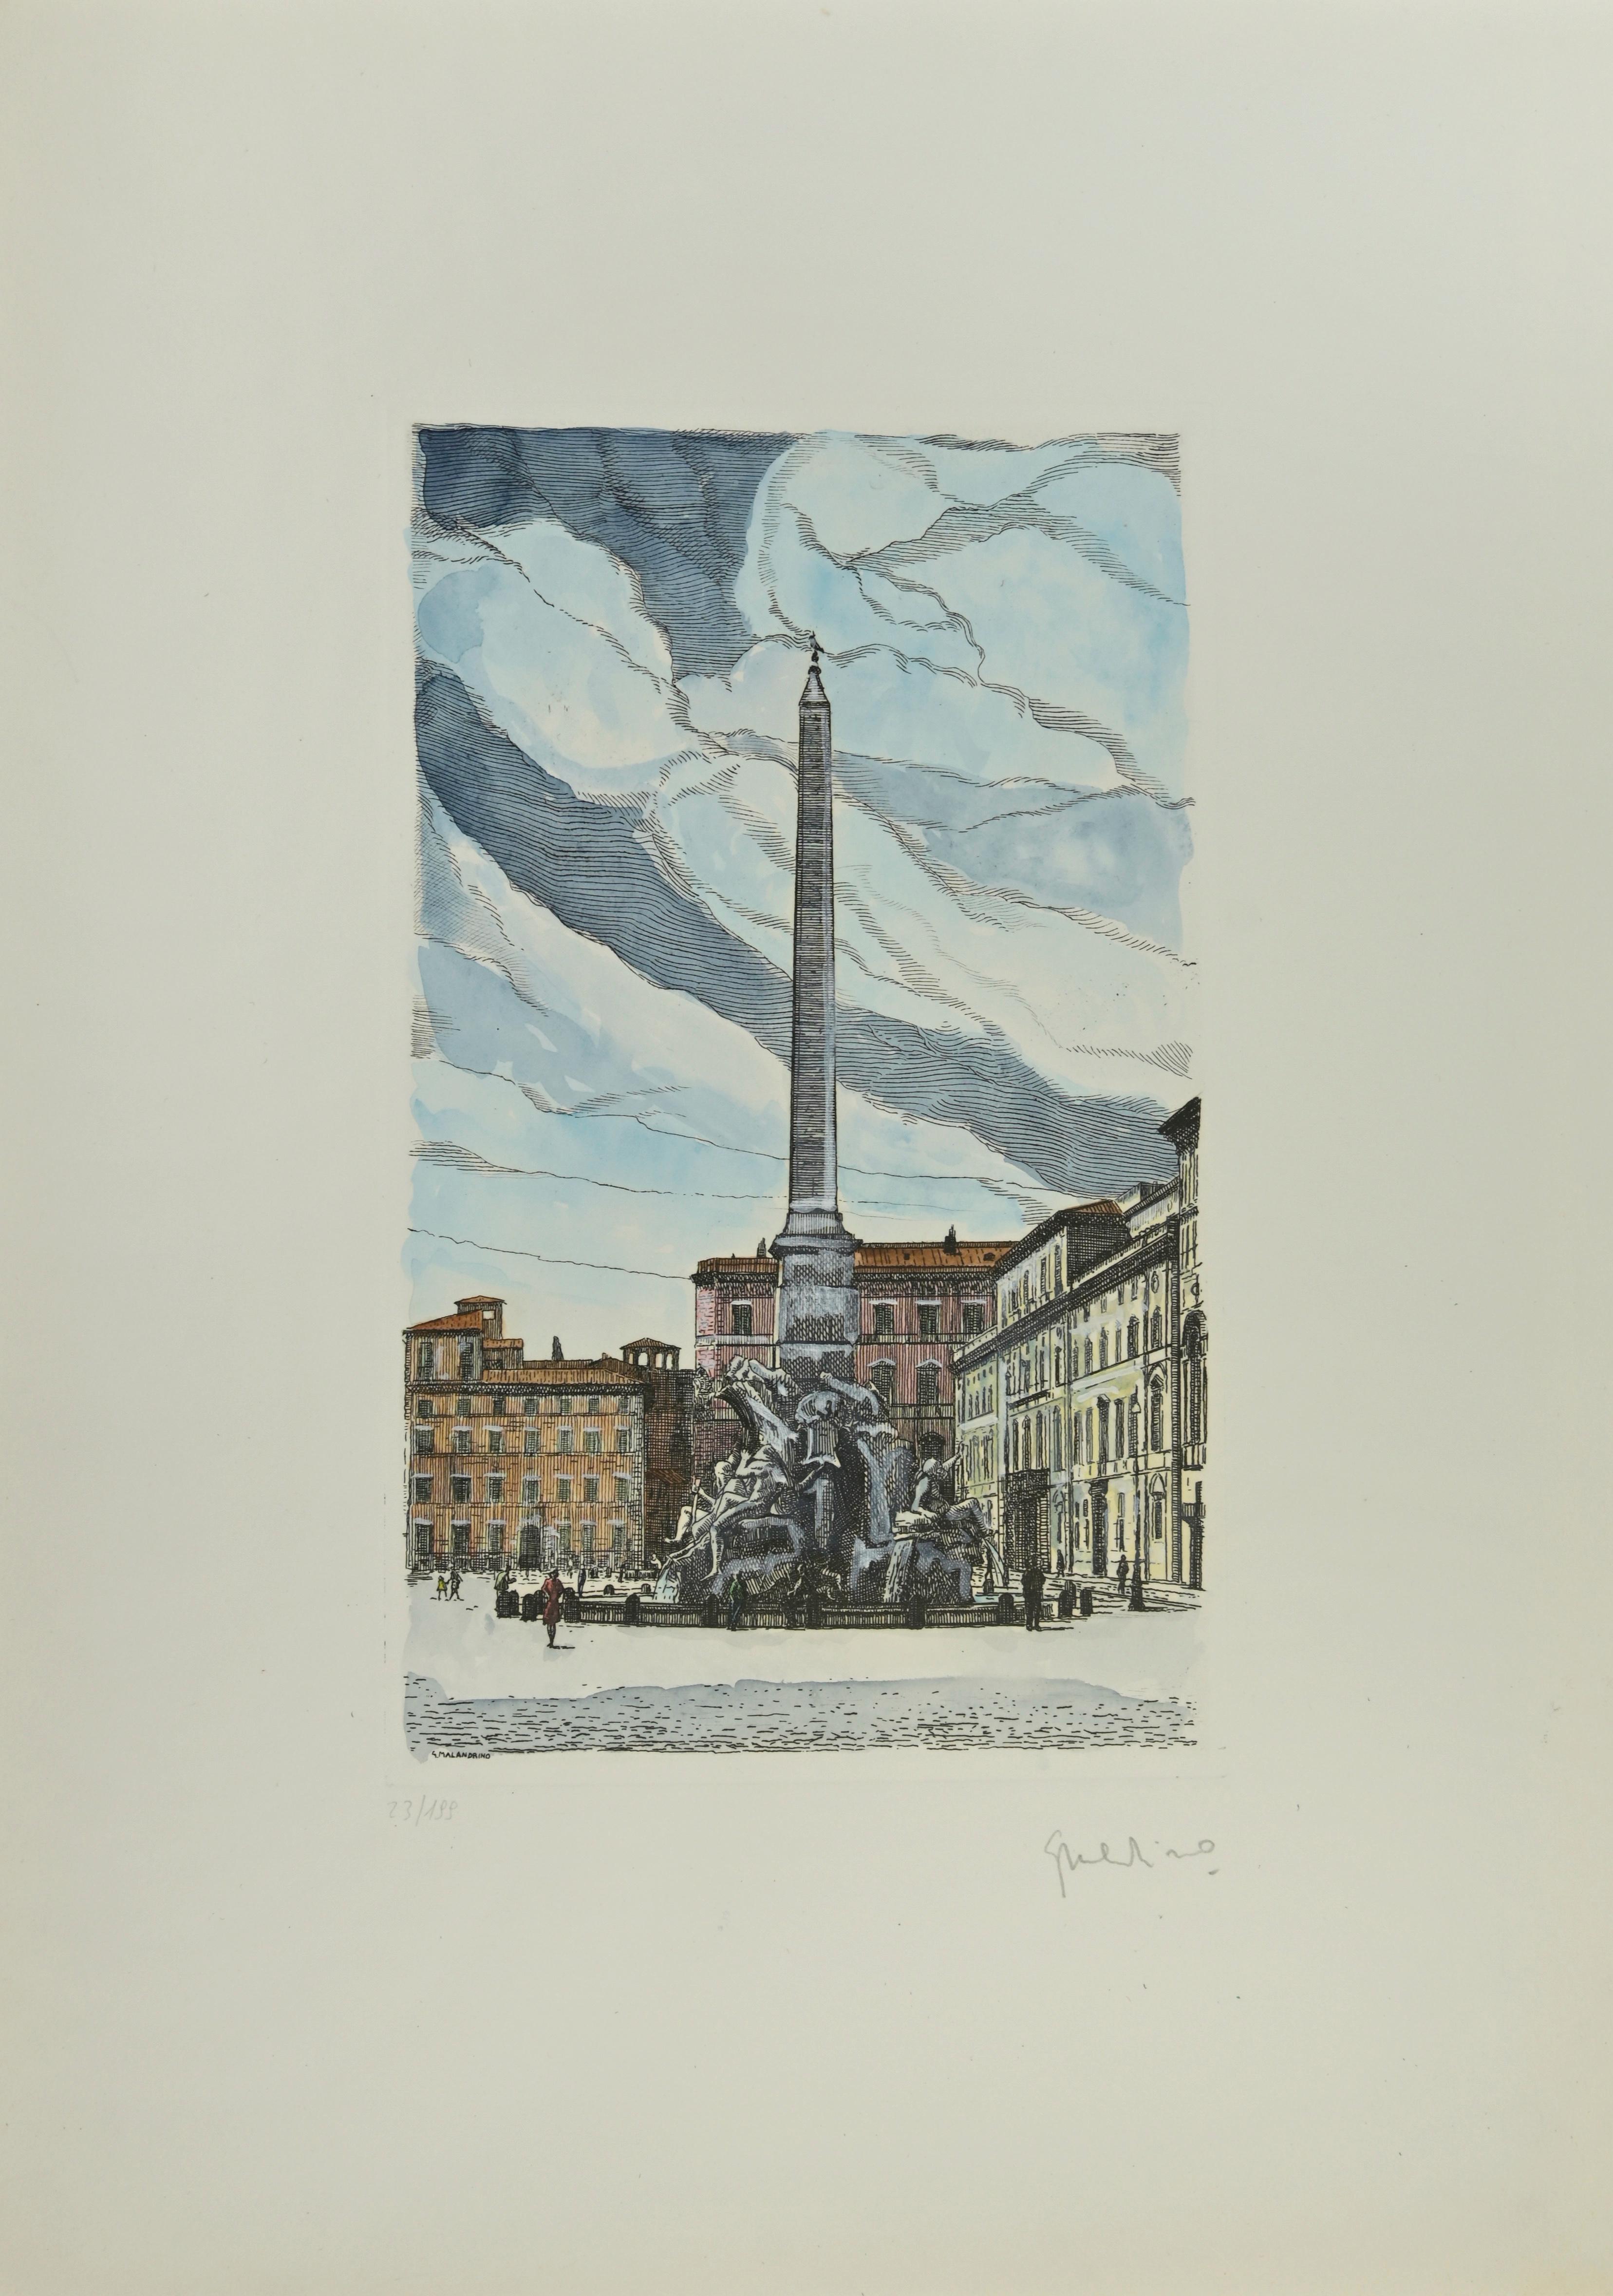 Fontana dei Quattro Fiumi ist ein Kunstwerk von Giuseppe Malandrino.

Originaldruck in Ätztechnik.

Vom Künstler in der rechten unteren Ecke mit Bleistift handsigniert.

Nummerierte Ausgabe Nr. 23/199 in der unteren linken Ecke

Gute Bedingungen.